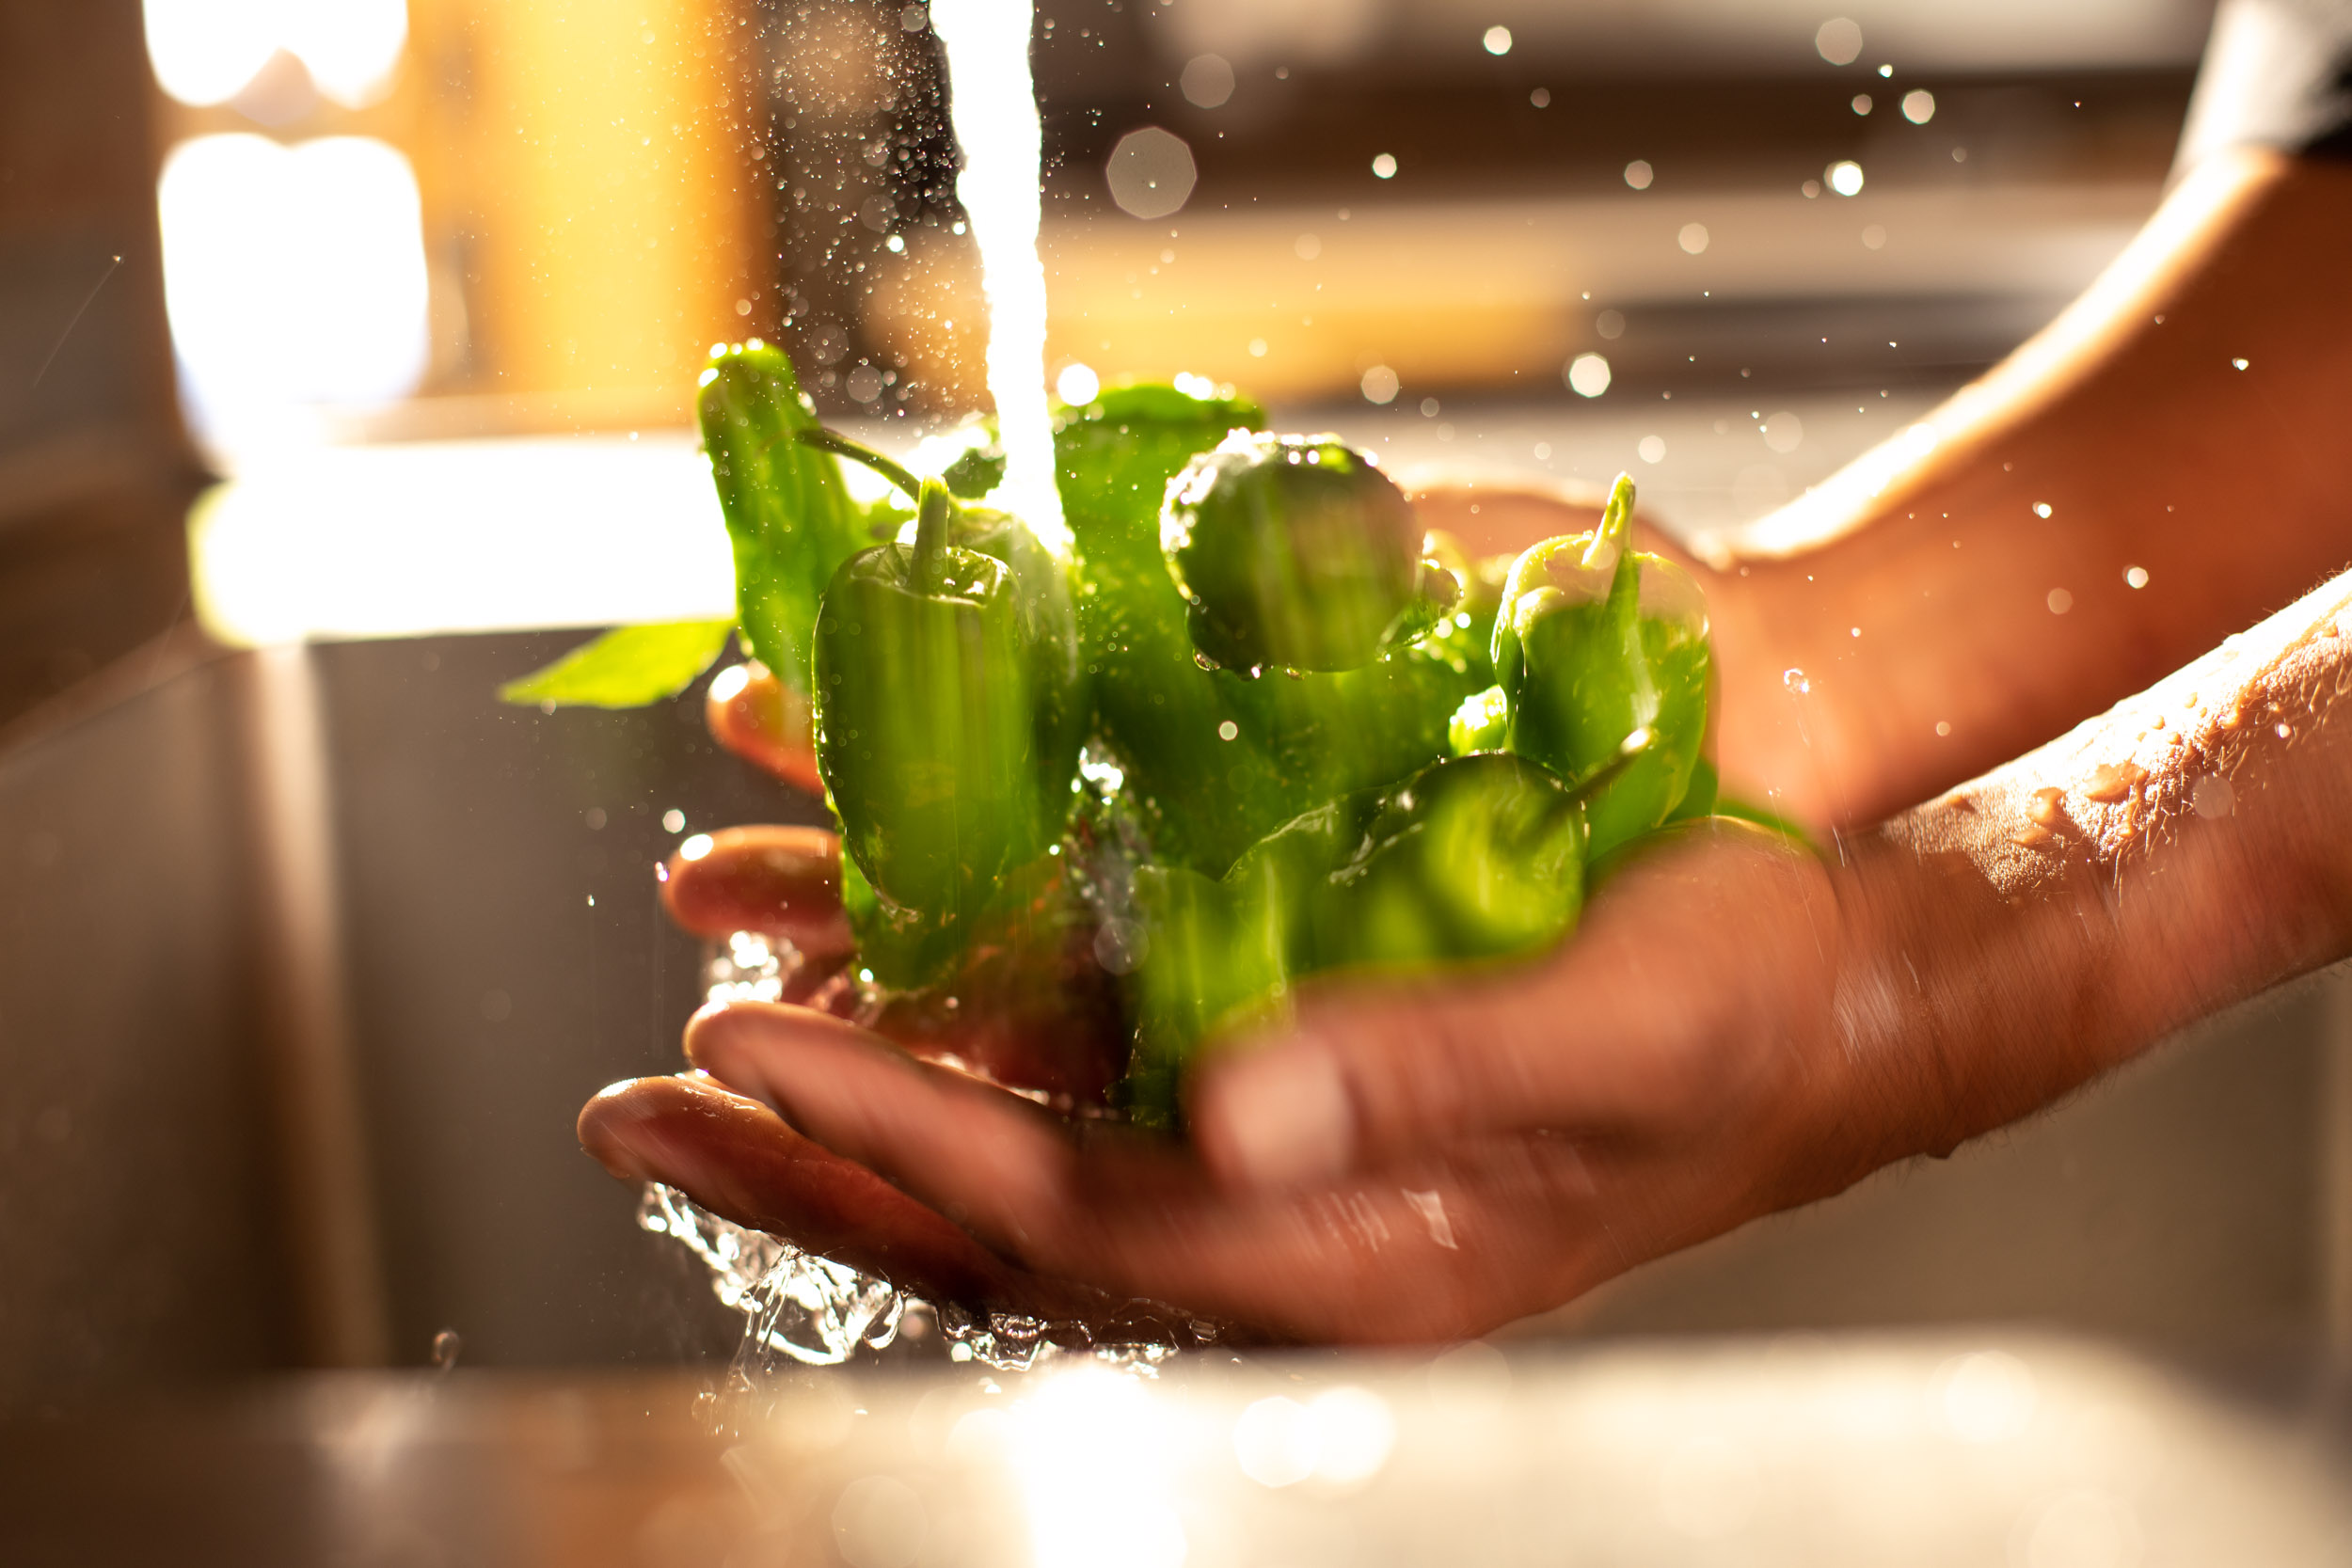 Washing shishito peppers